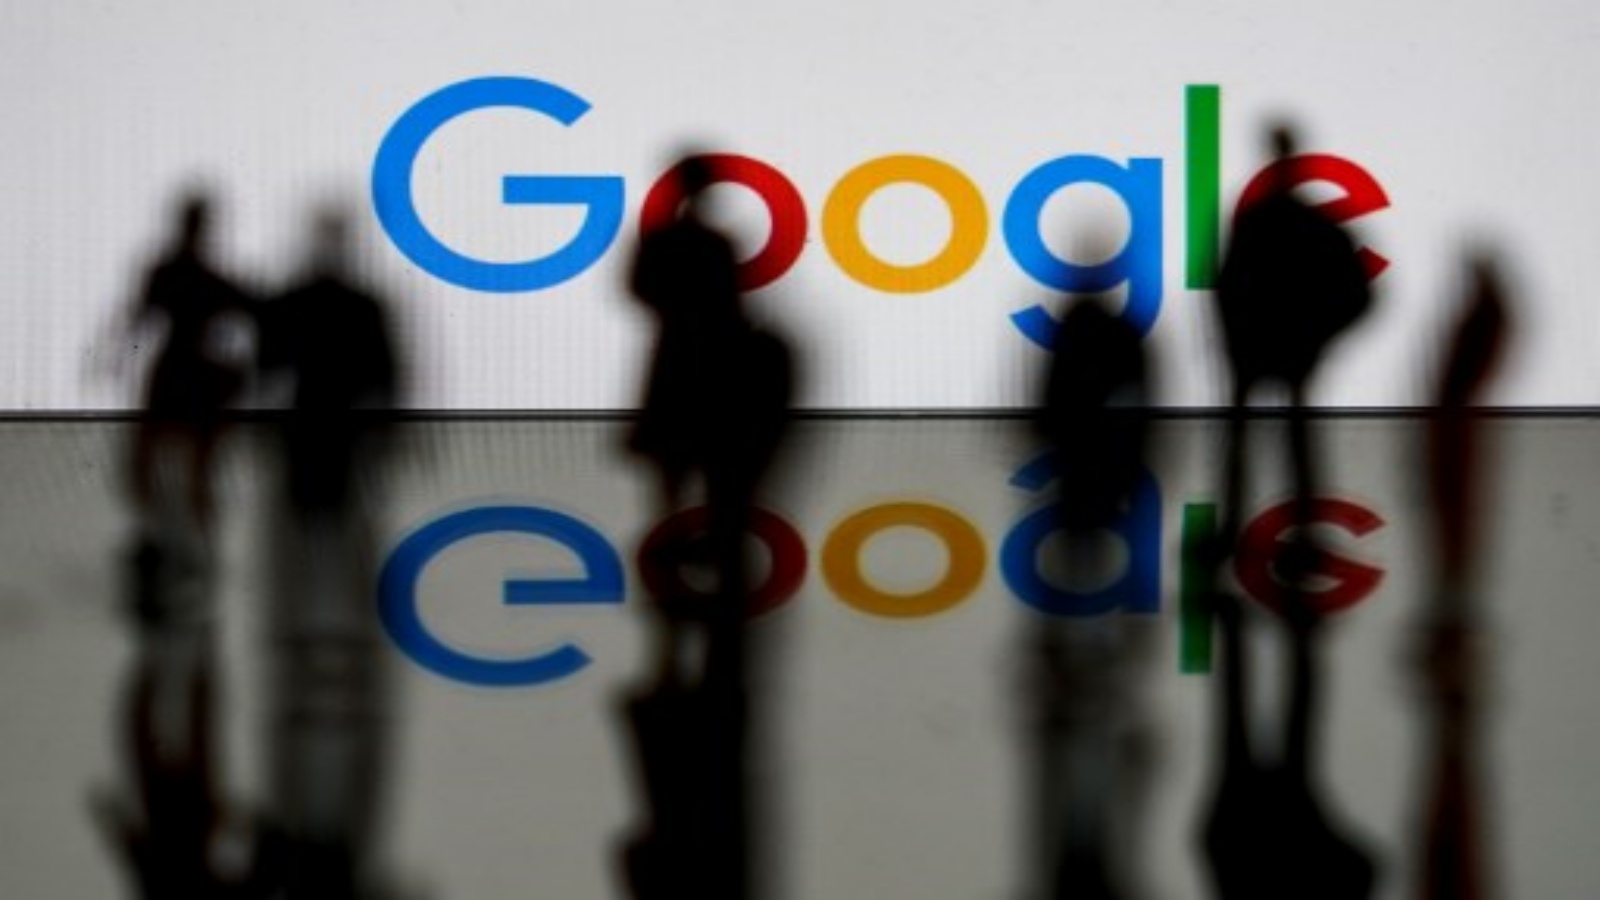 شعار شركة Google للتكنولوجيا متعددة الجنسيات والخدمات المرتبطة بالإنترنت في بروكسل. تسبب انقطاع كبير في خدمات Google ، بما في ذلك Gmail ومنصة مشاركة الفيديو ، YouTube في وضع عدم الاتصال في جميع أنحاء العالم.